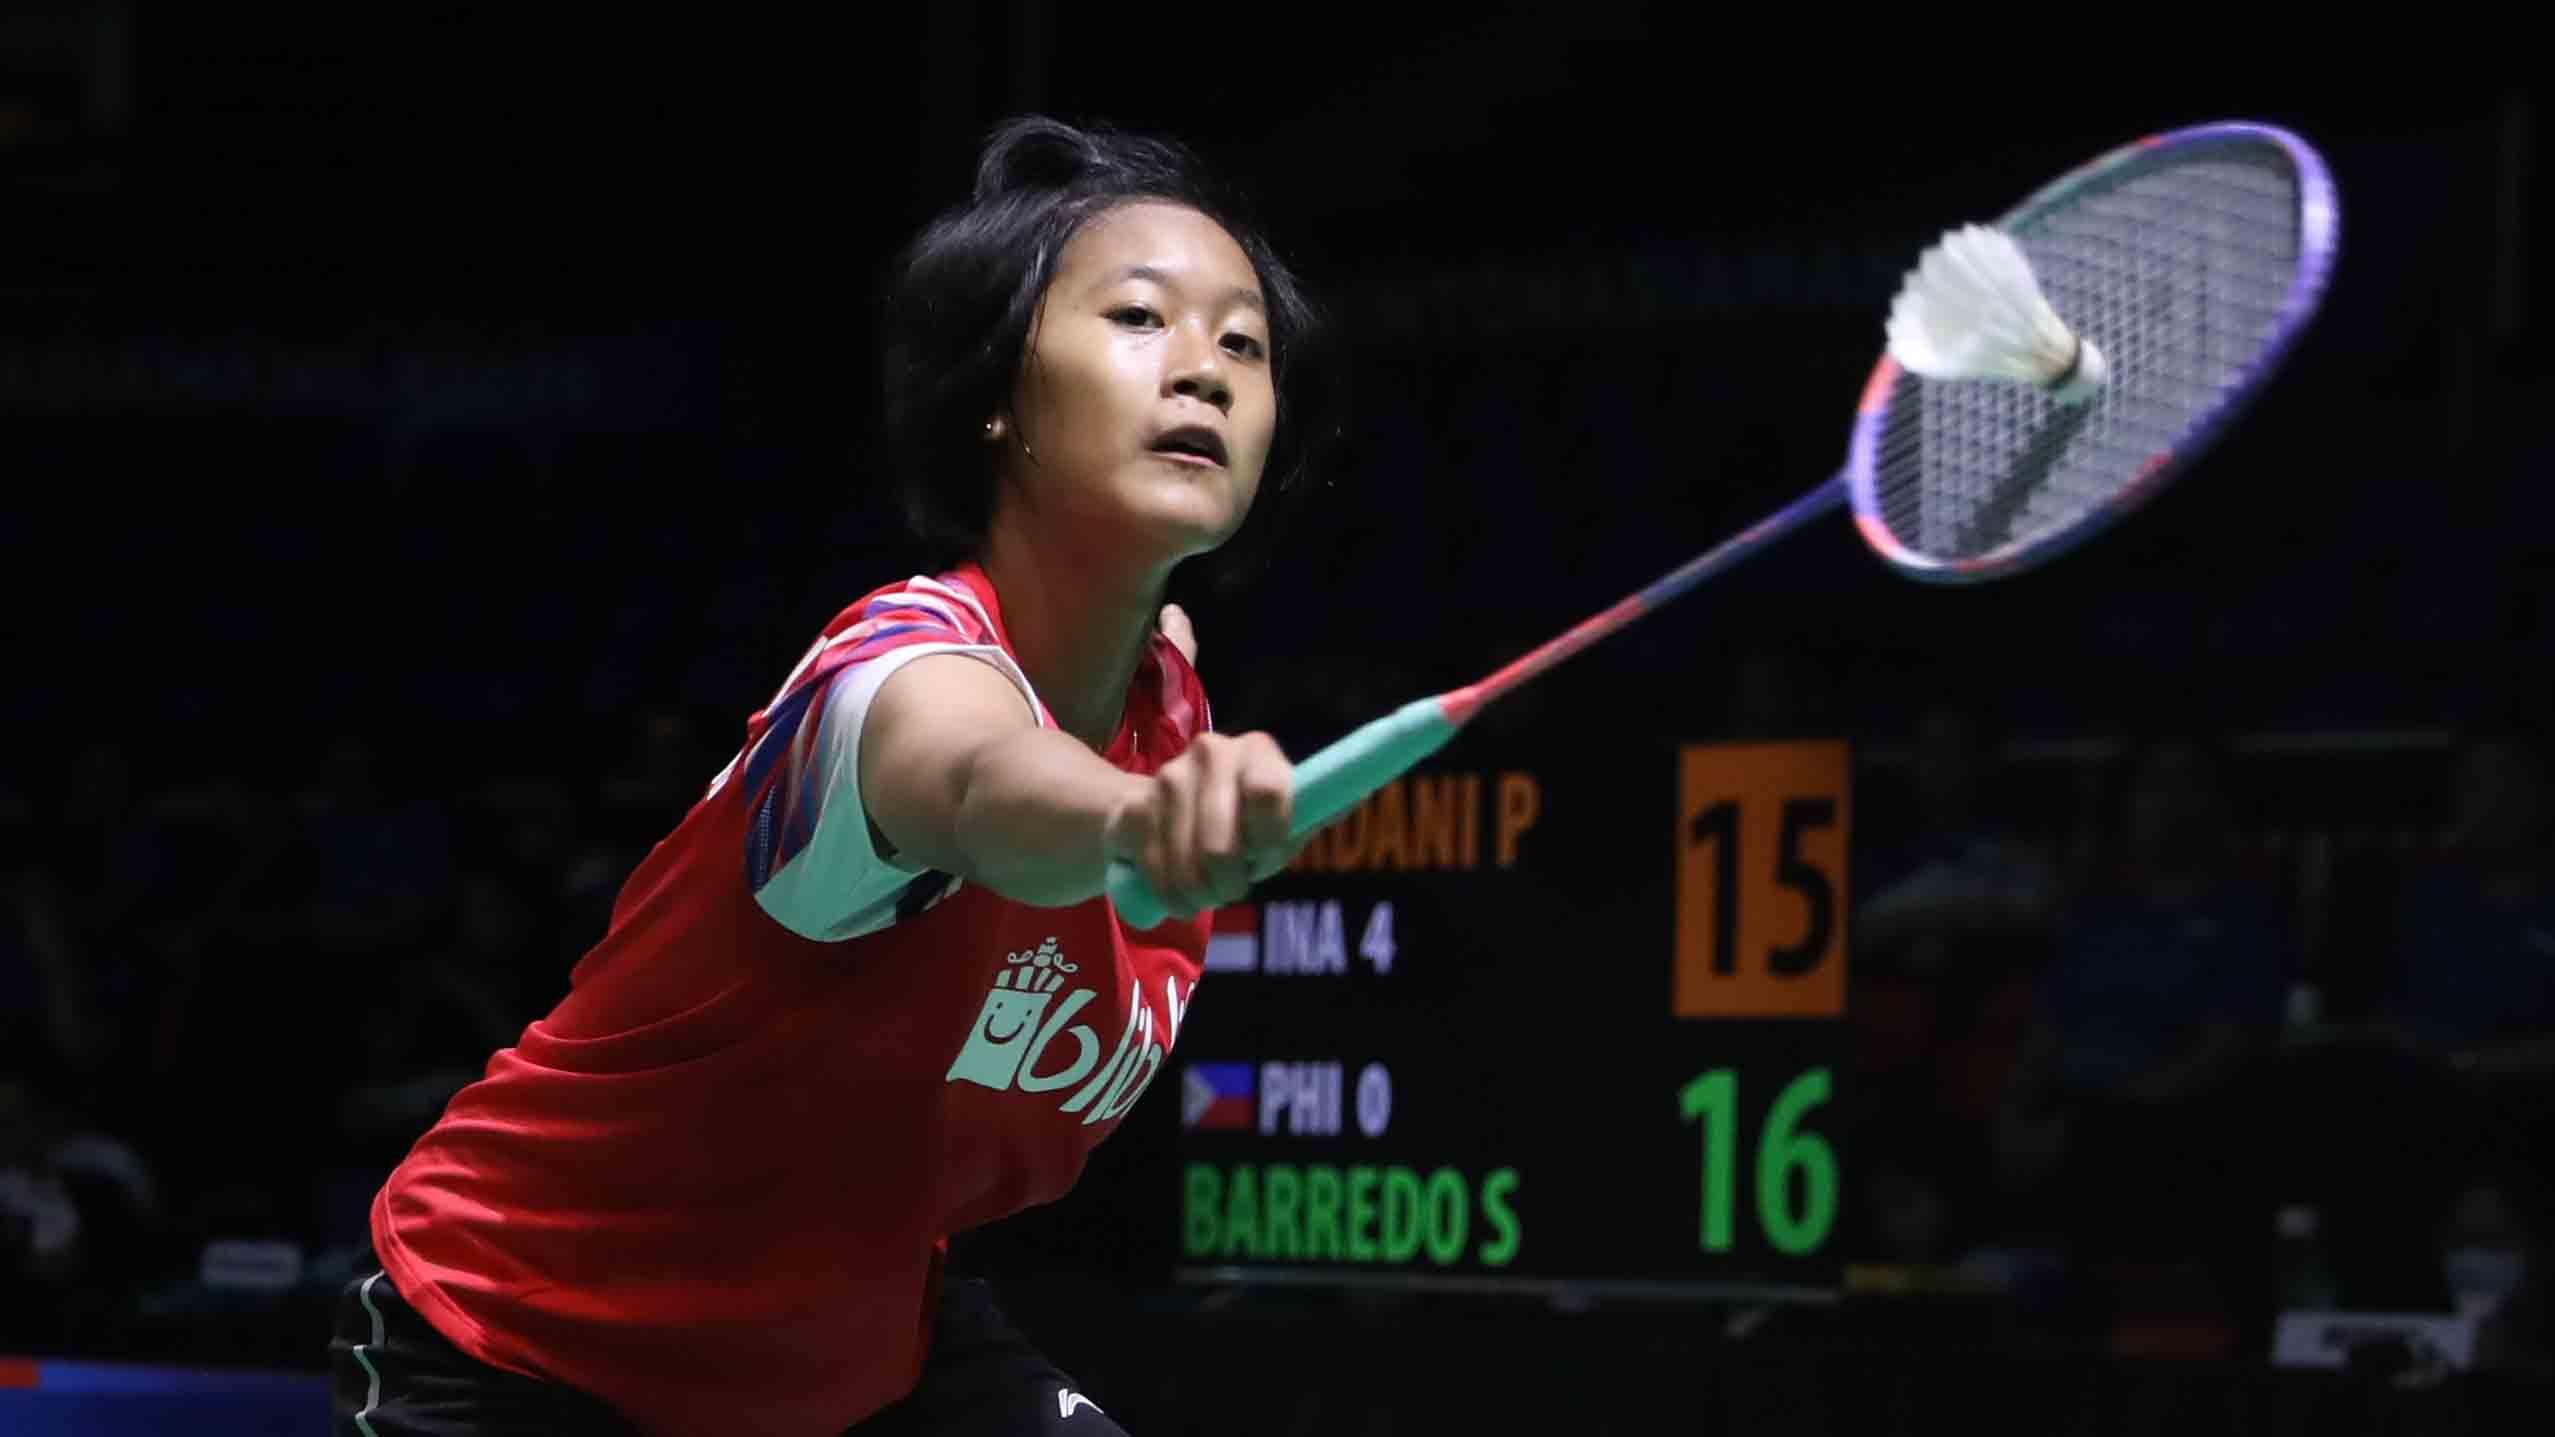 Badminton Eropa memberikan pujian kepada talenta muda Indonesia, Putri Kusuma Wardani yang menang tanpa kesulitan saat hadapi unggulan 3, Line Christophersen. - INDOSPORT